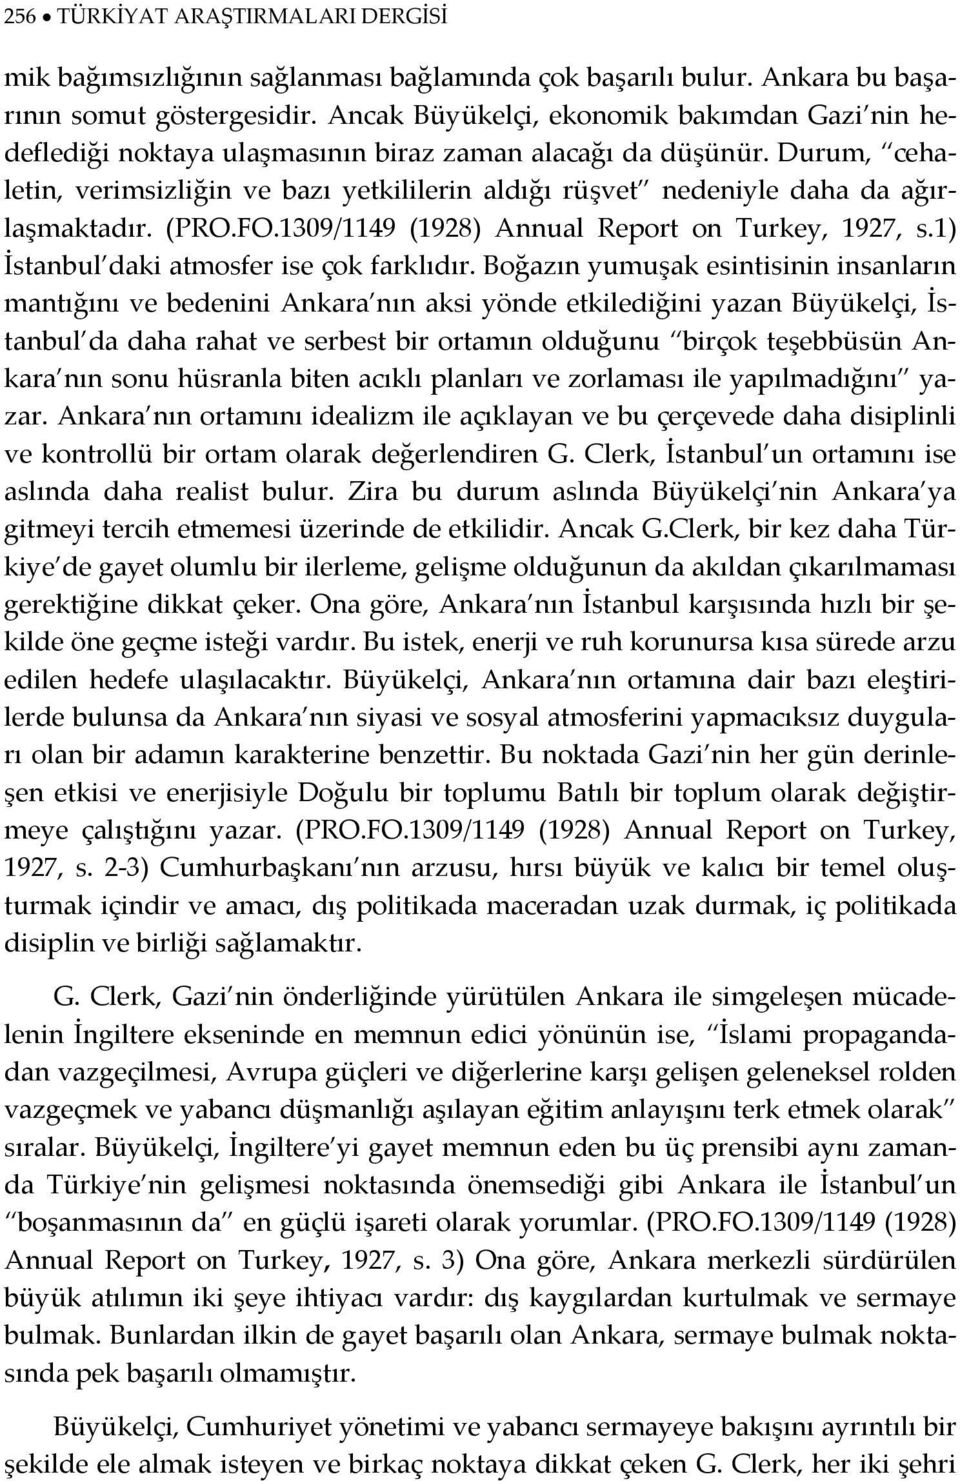 Durum, cehaletin, verimsizliğin ve bazı yetkililerin aldığı rüşvet nedeniyle daha da ağırlaşmaktadır. (PRO.FO.1309/1149 (1928) Annual Report on Turkey, 1927, s.